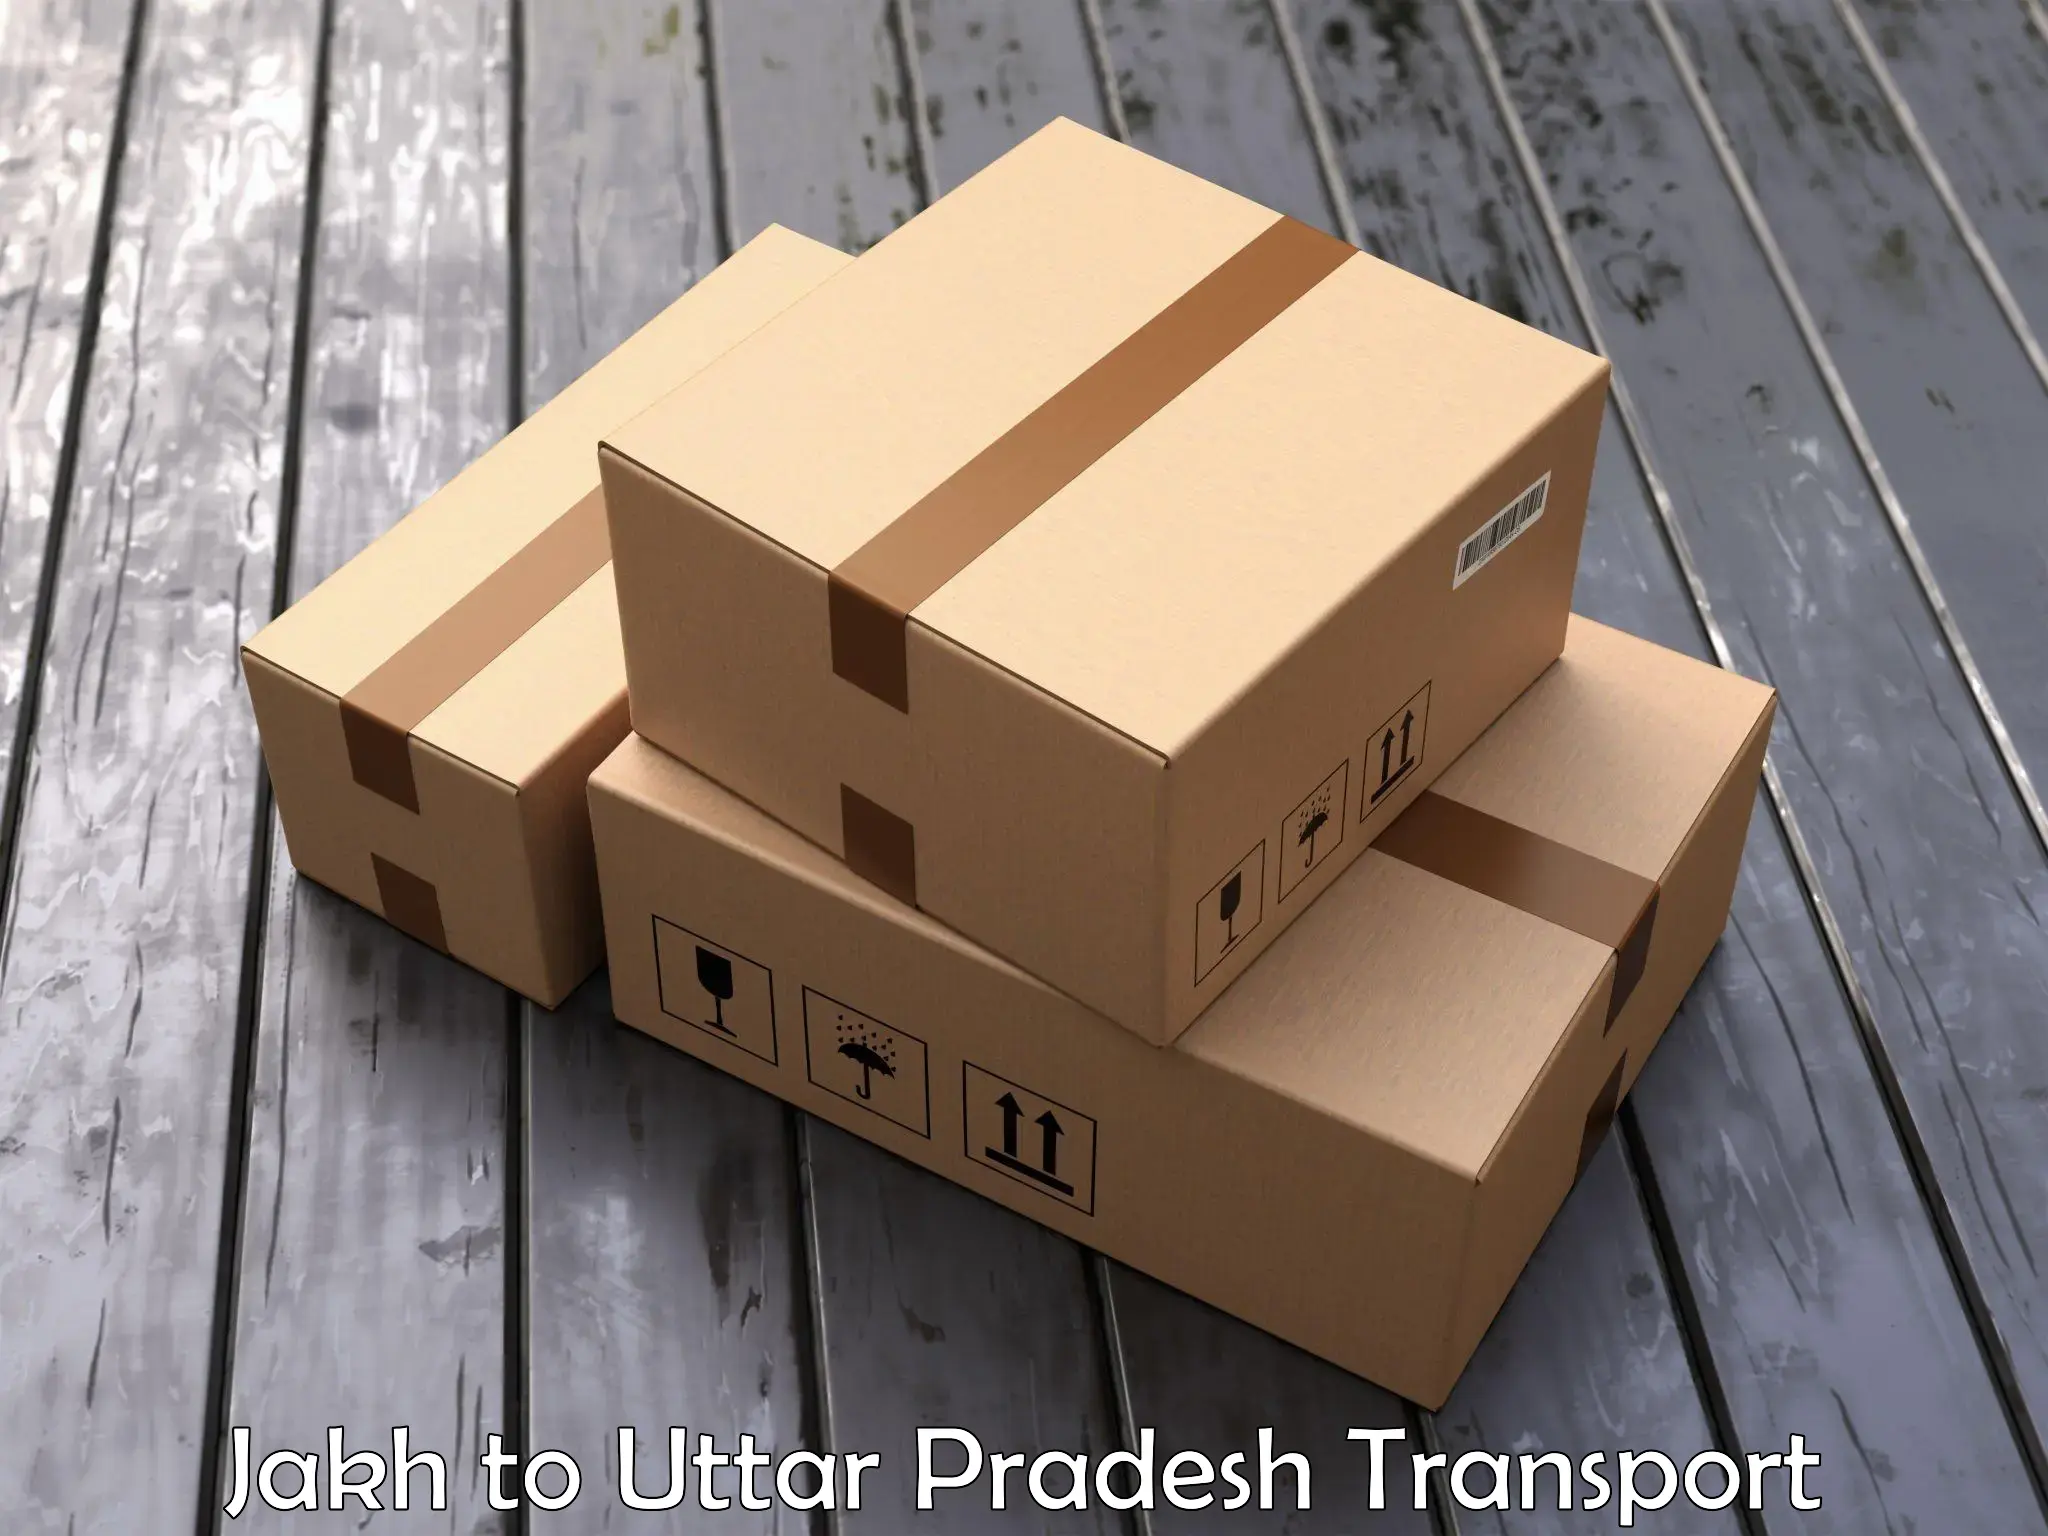 Nearest transport service Jakh to Agra